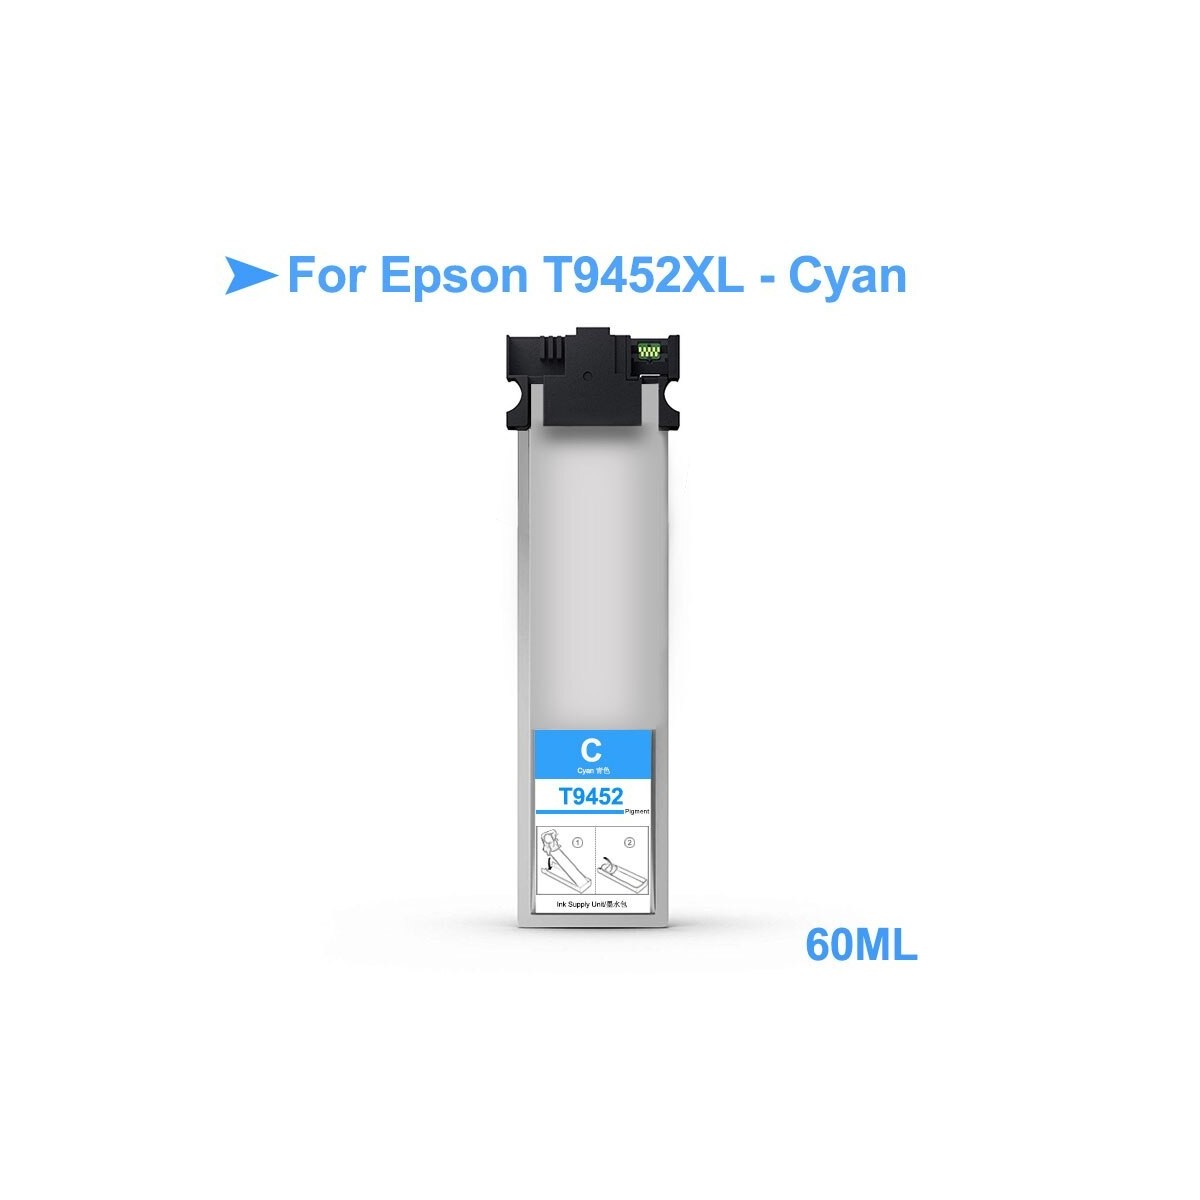 1 Cartouche d'encre cyan compatible Epson T9452XL 60ml